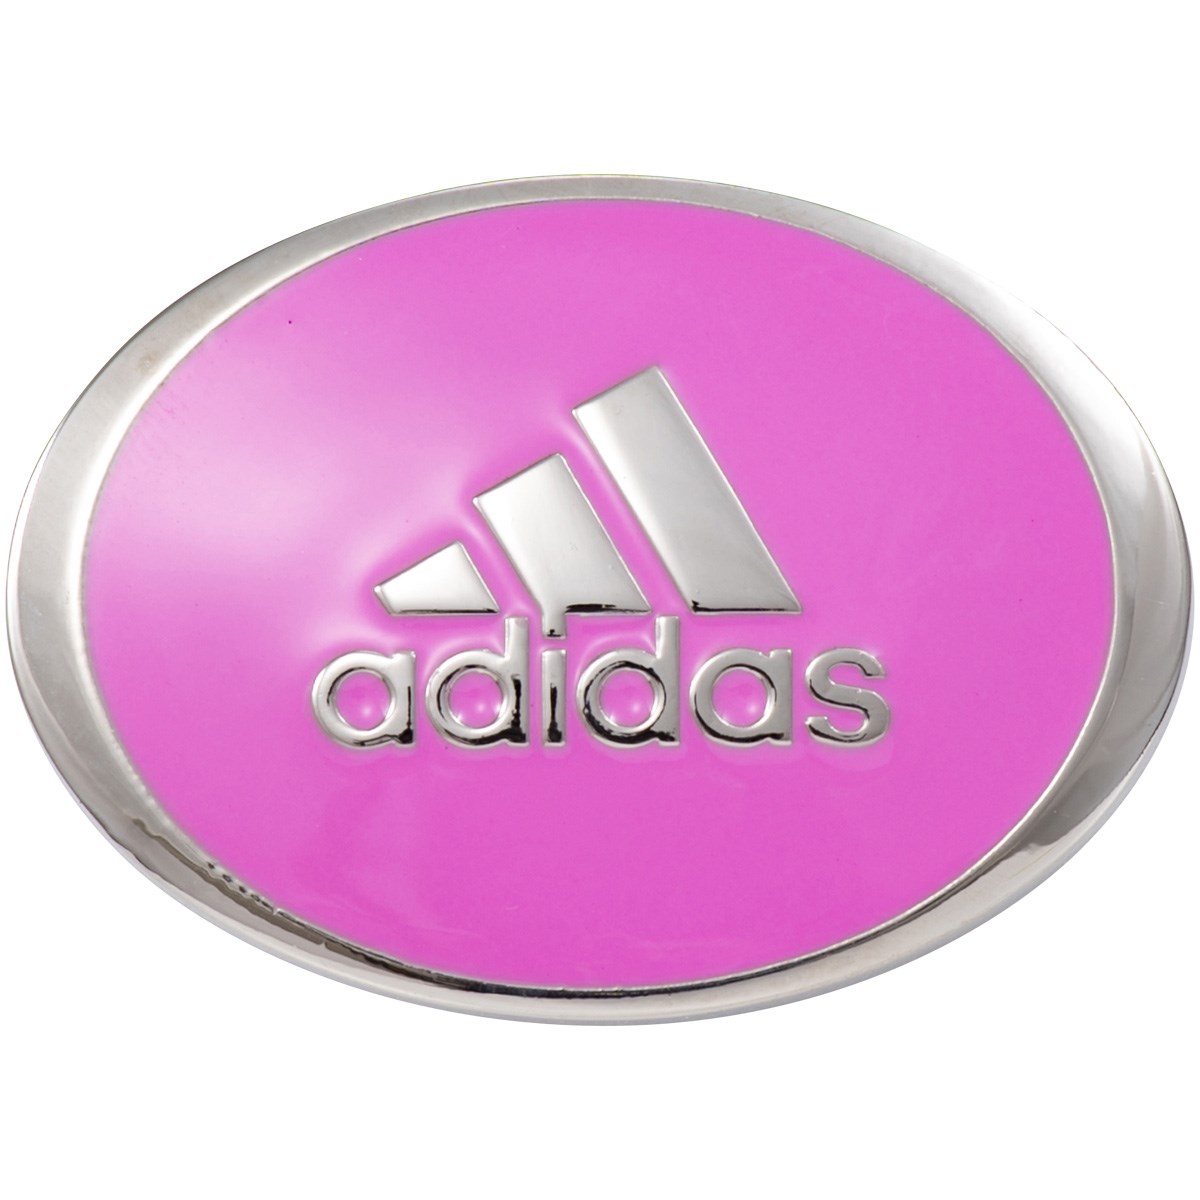 dショッピング |アディダス Adidas ツインクリップマーカー スクリーミングピンク | カテゴリ：マーカーの販売できる商品 | GDOゴルフショップ  (0521004901741)|ドコモの通販サイト